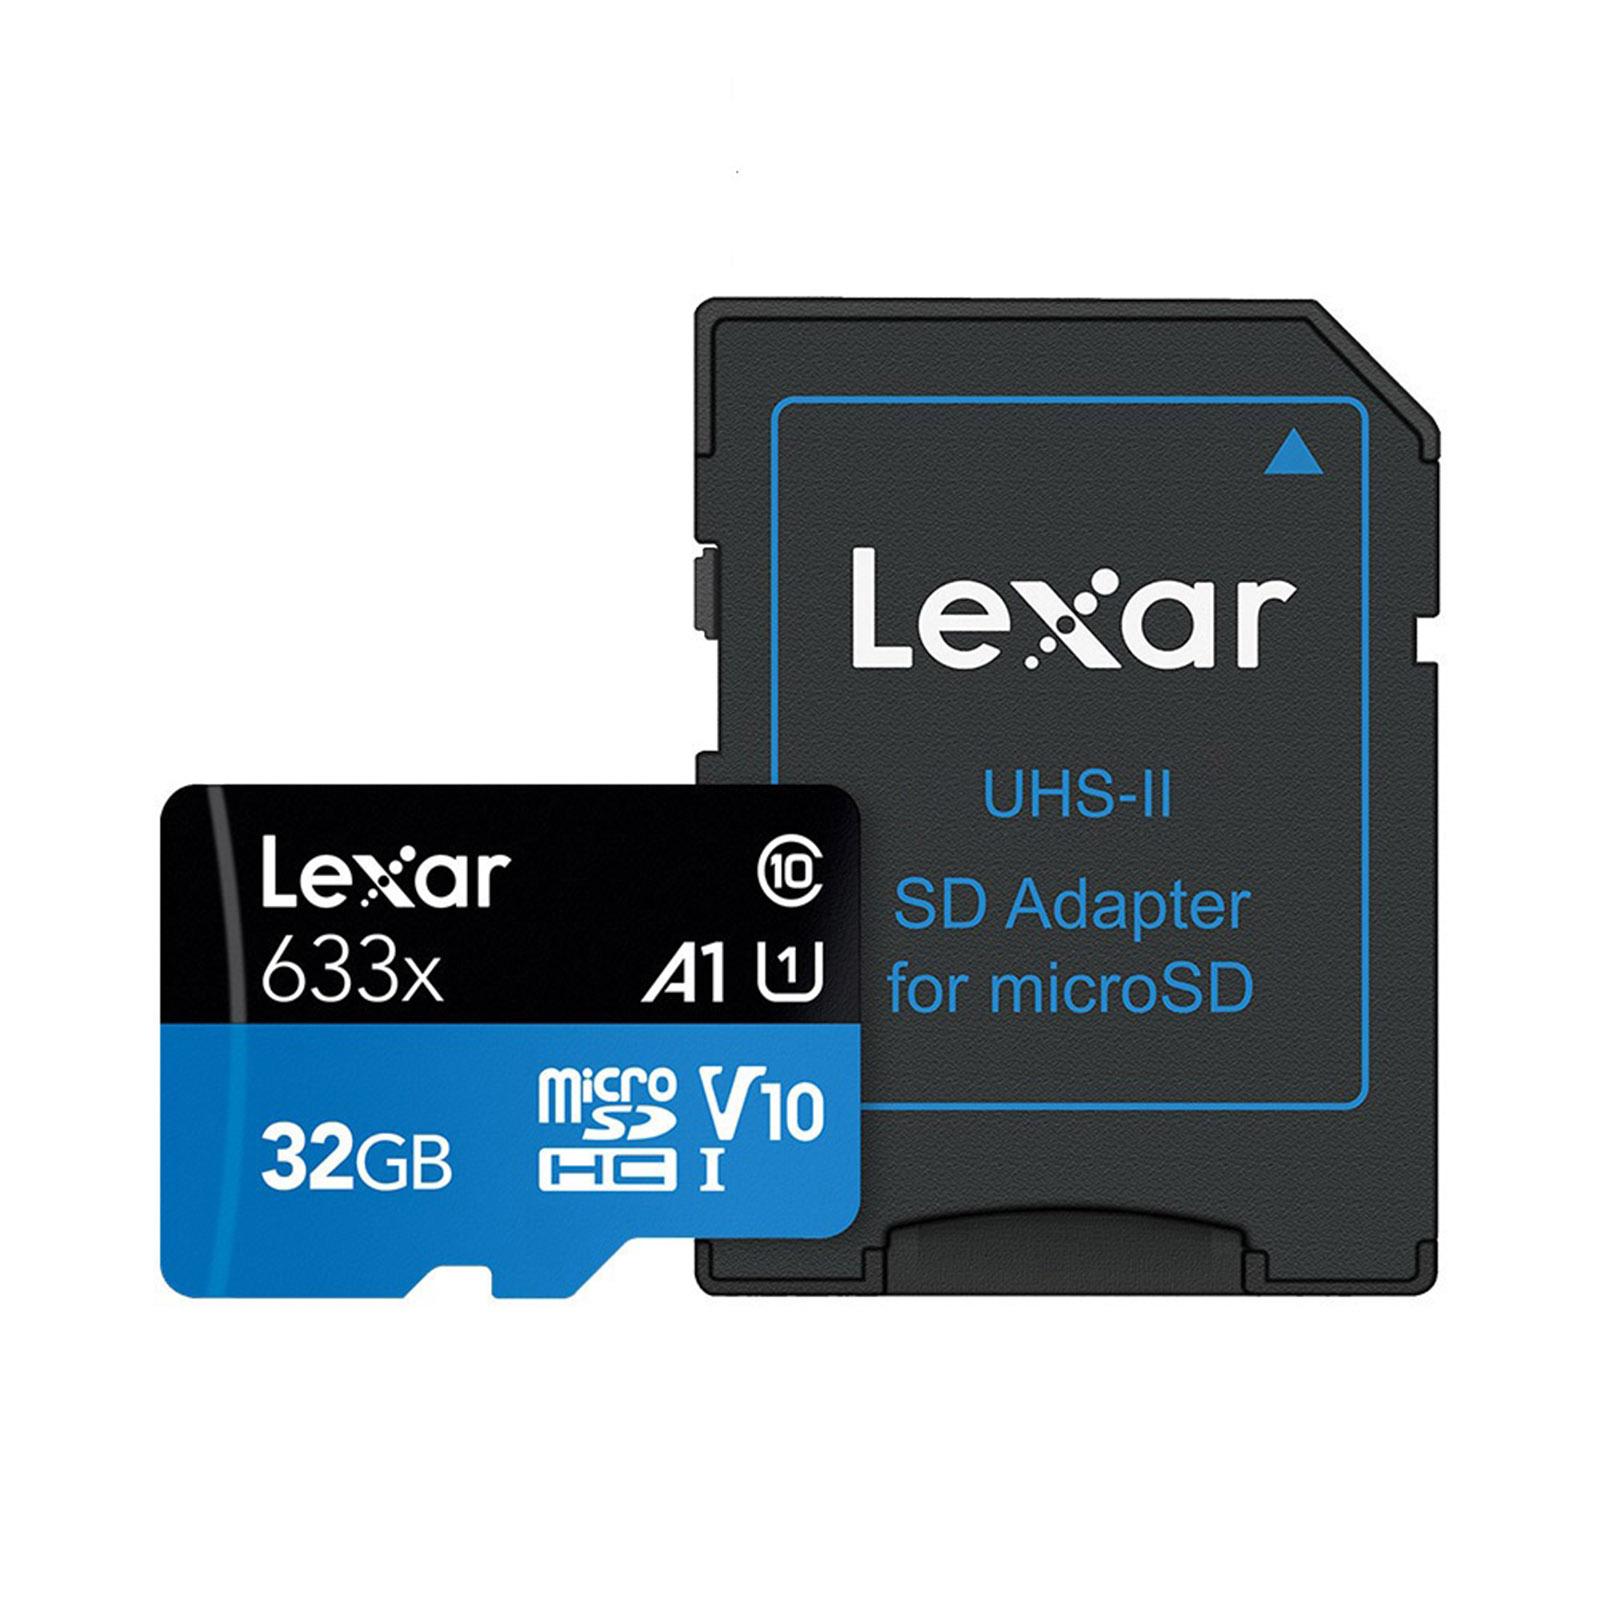 Thẻ Lexar TF Tốc độ đọc 95MB / giây Tốc độ ghi 20MB / giây Thẻ nhớ Micro SDHC Class10 UHS-I U1 V10 A1 - 64GB